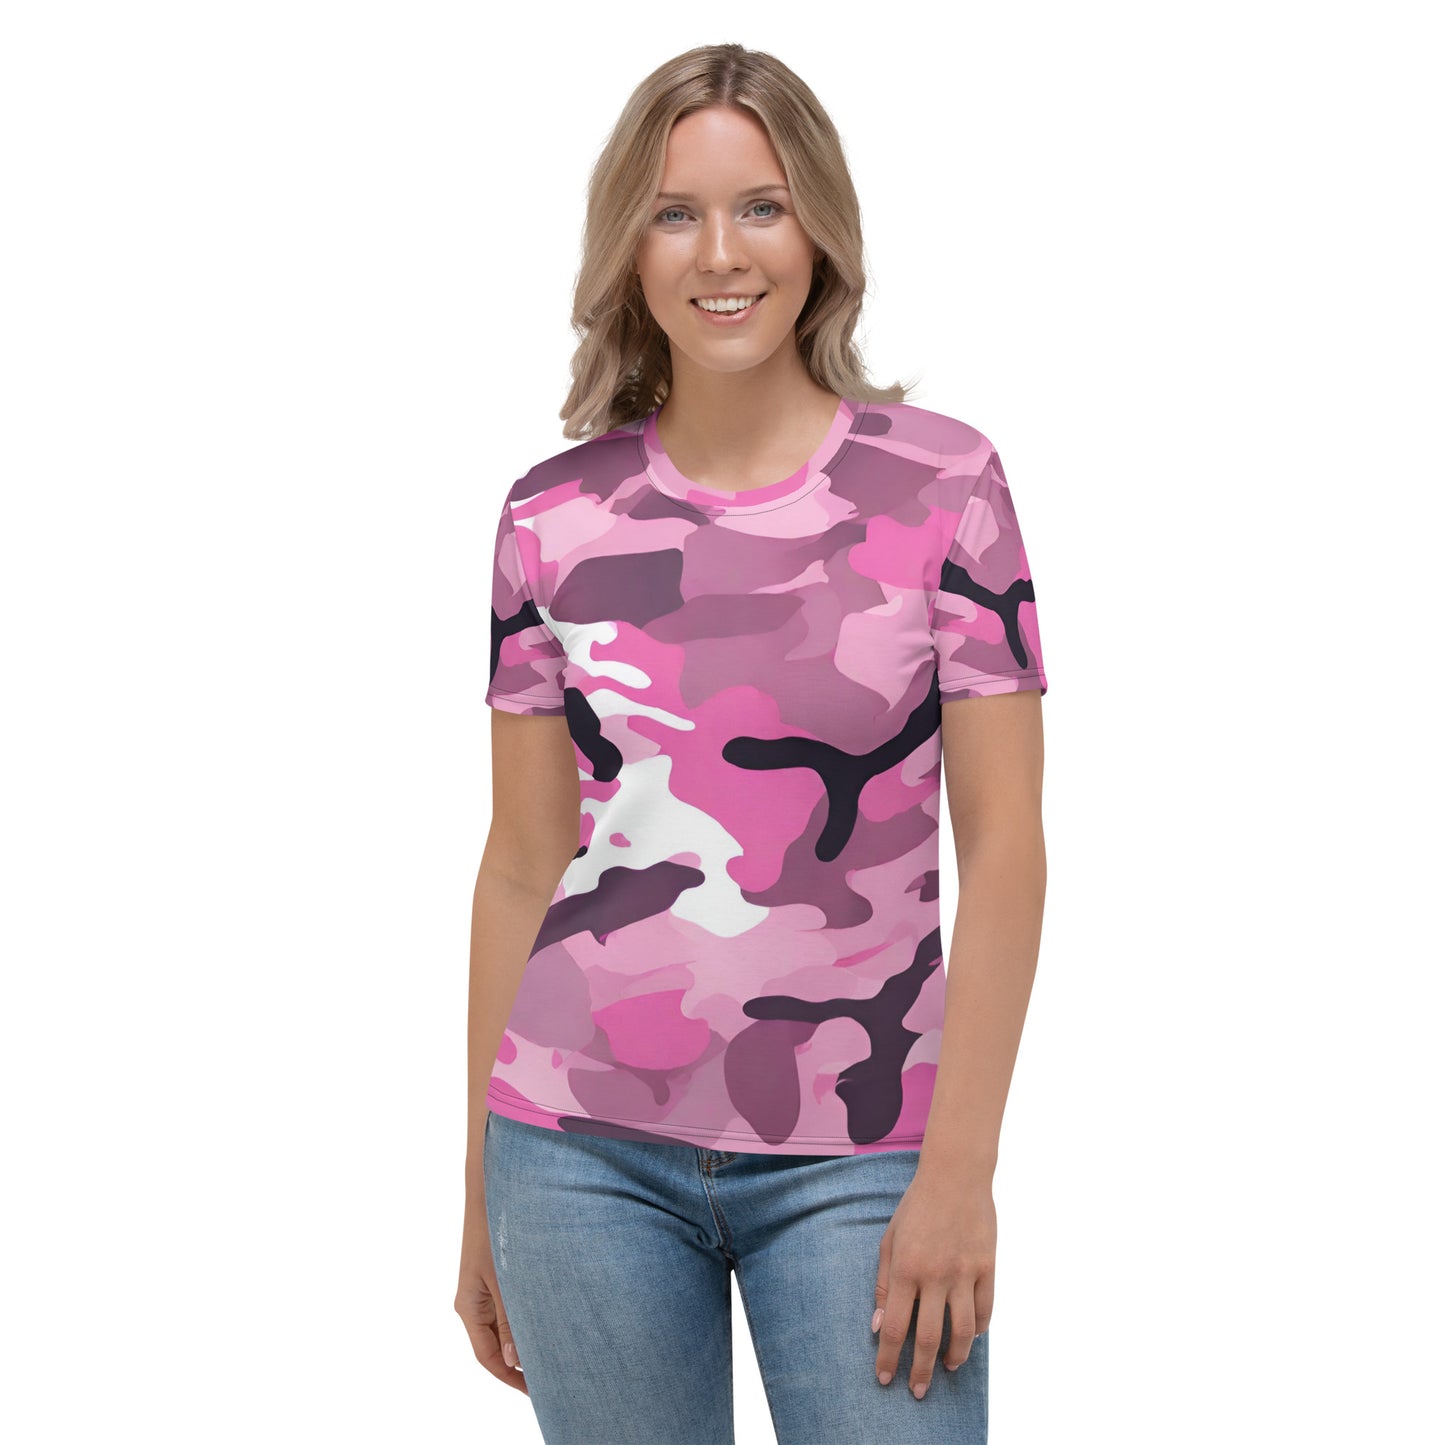 Pink Camo Women's T-Shirt